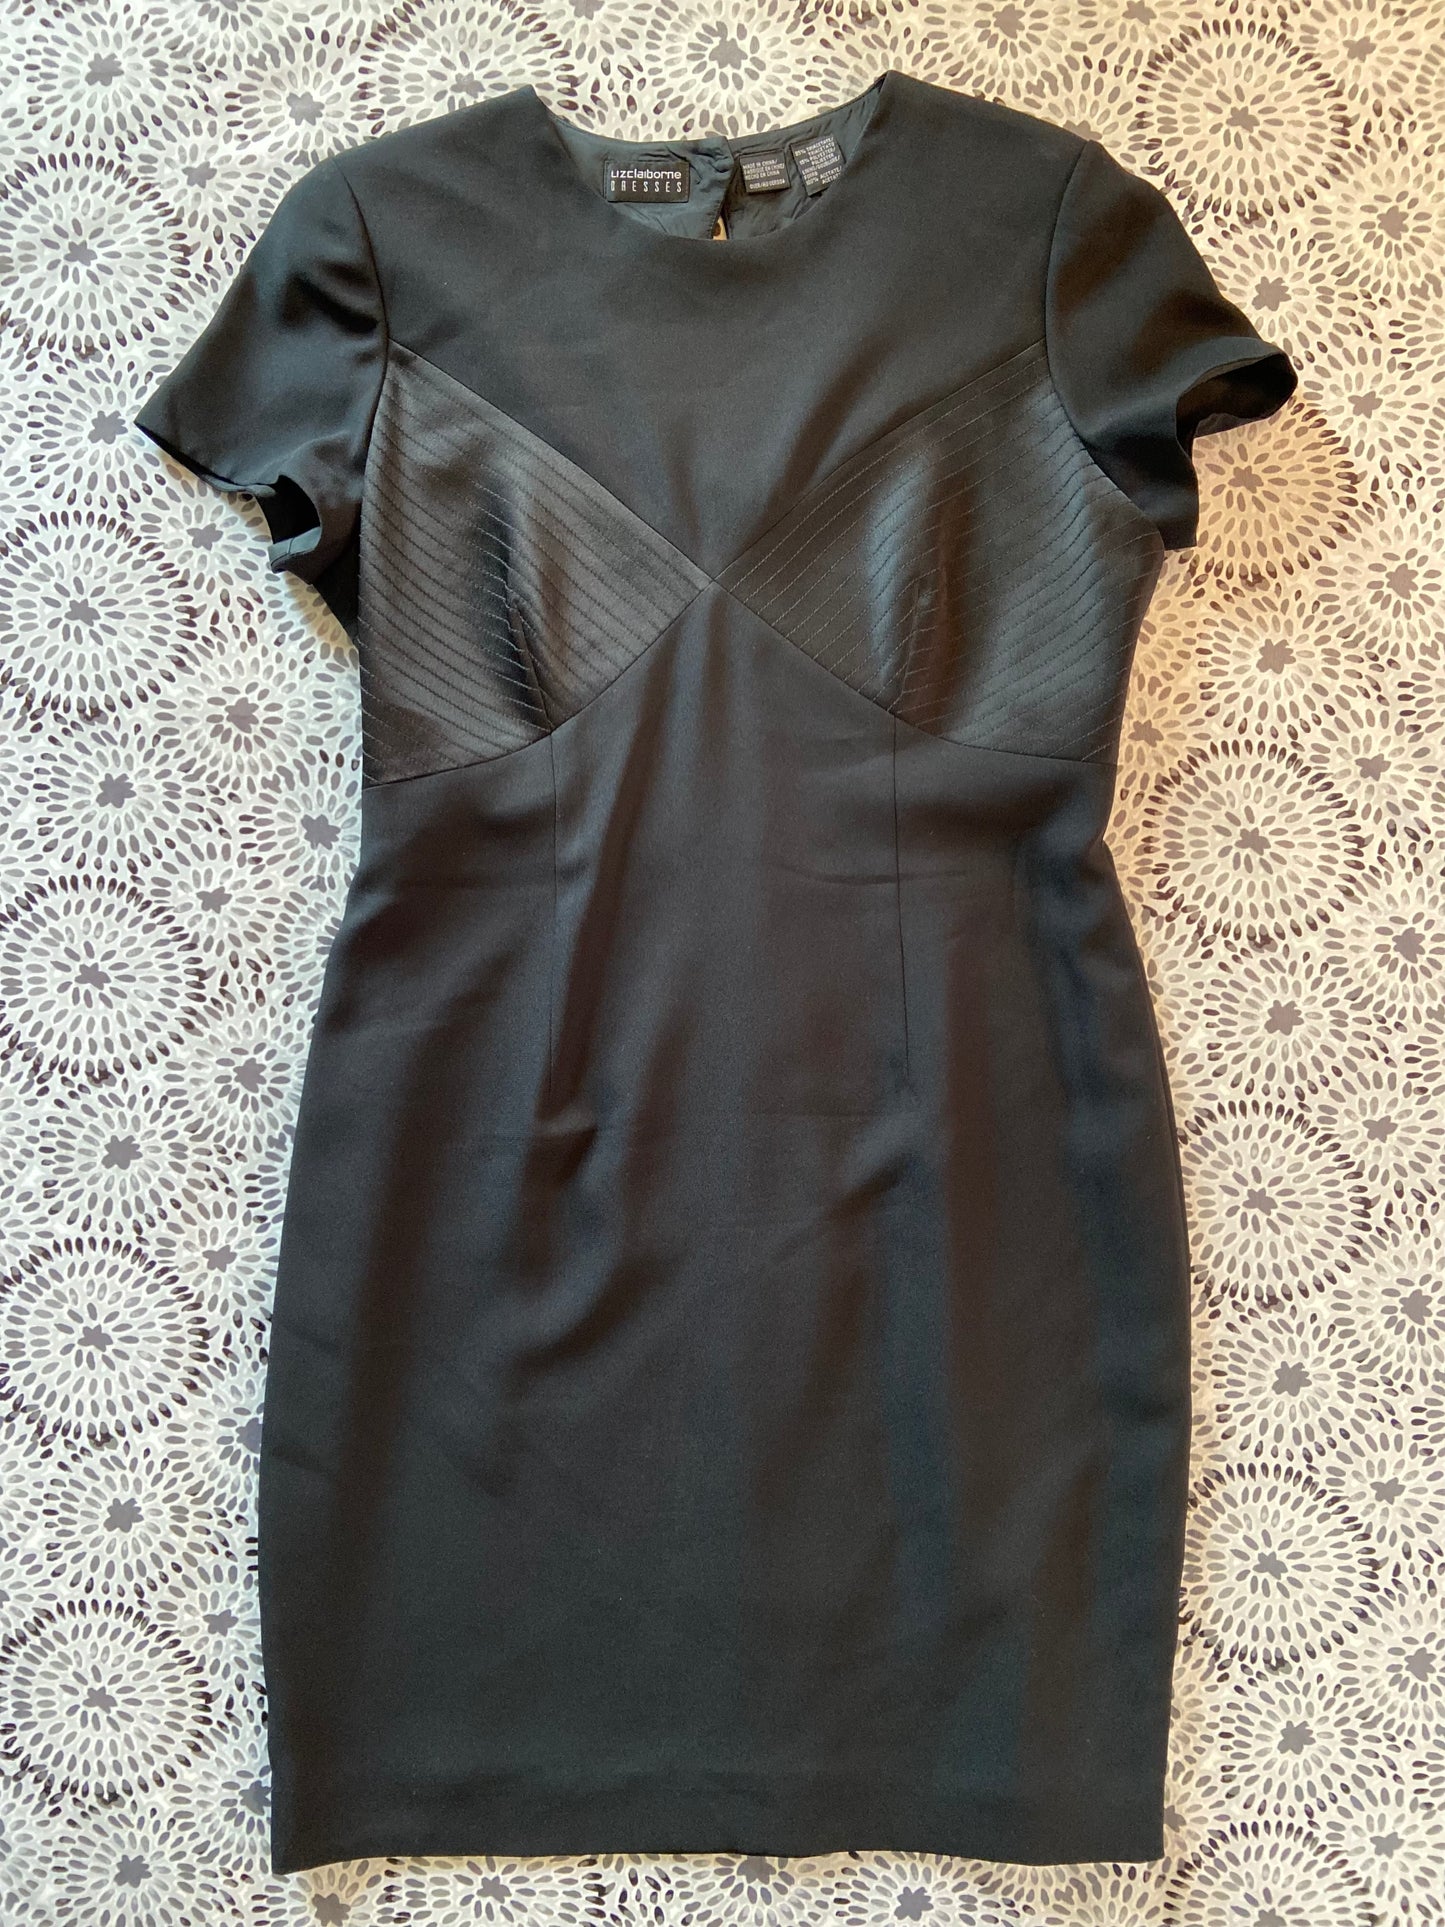 LITTLE BLACK DRESS Liz Claiborne Size 14